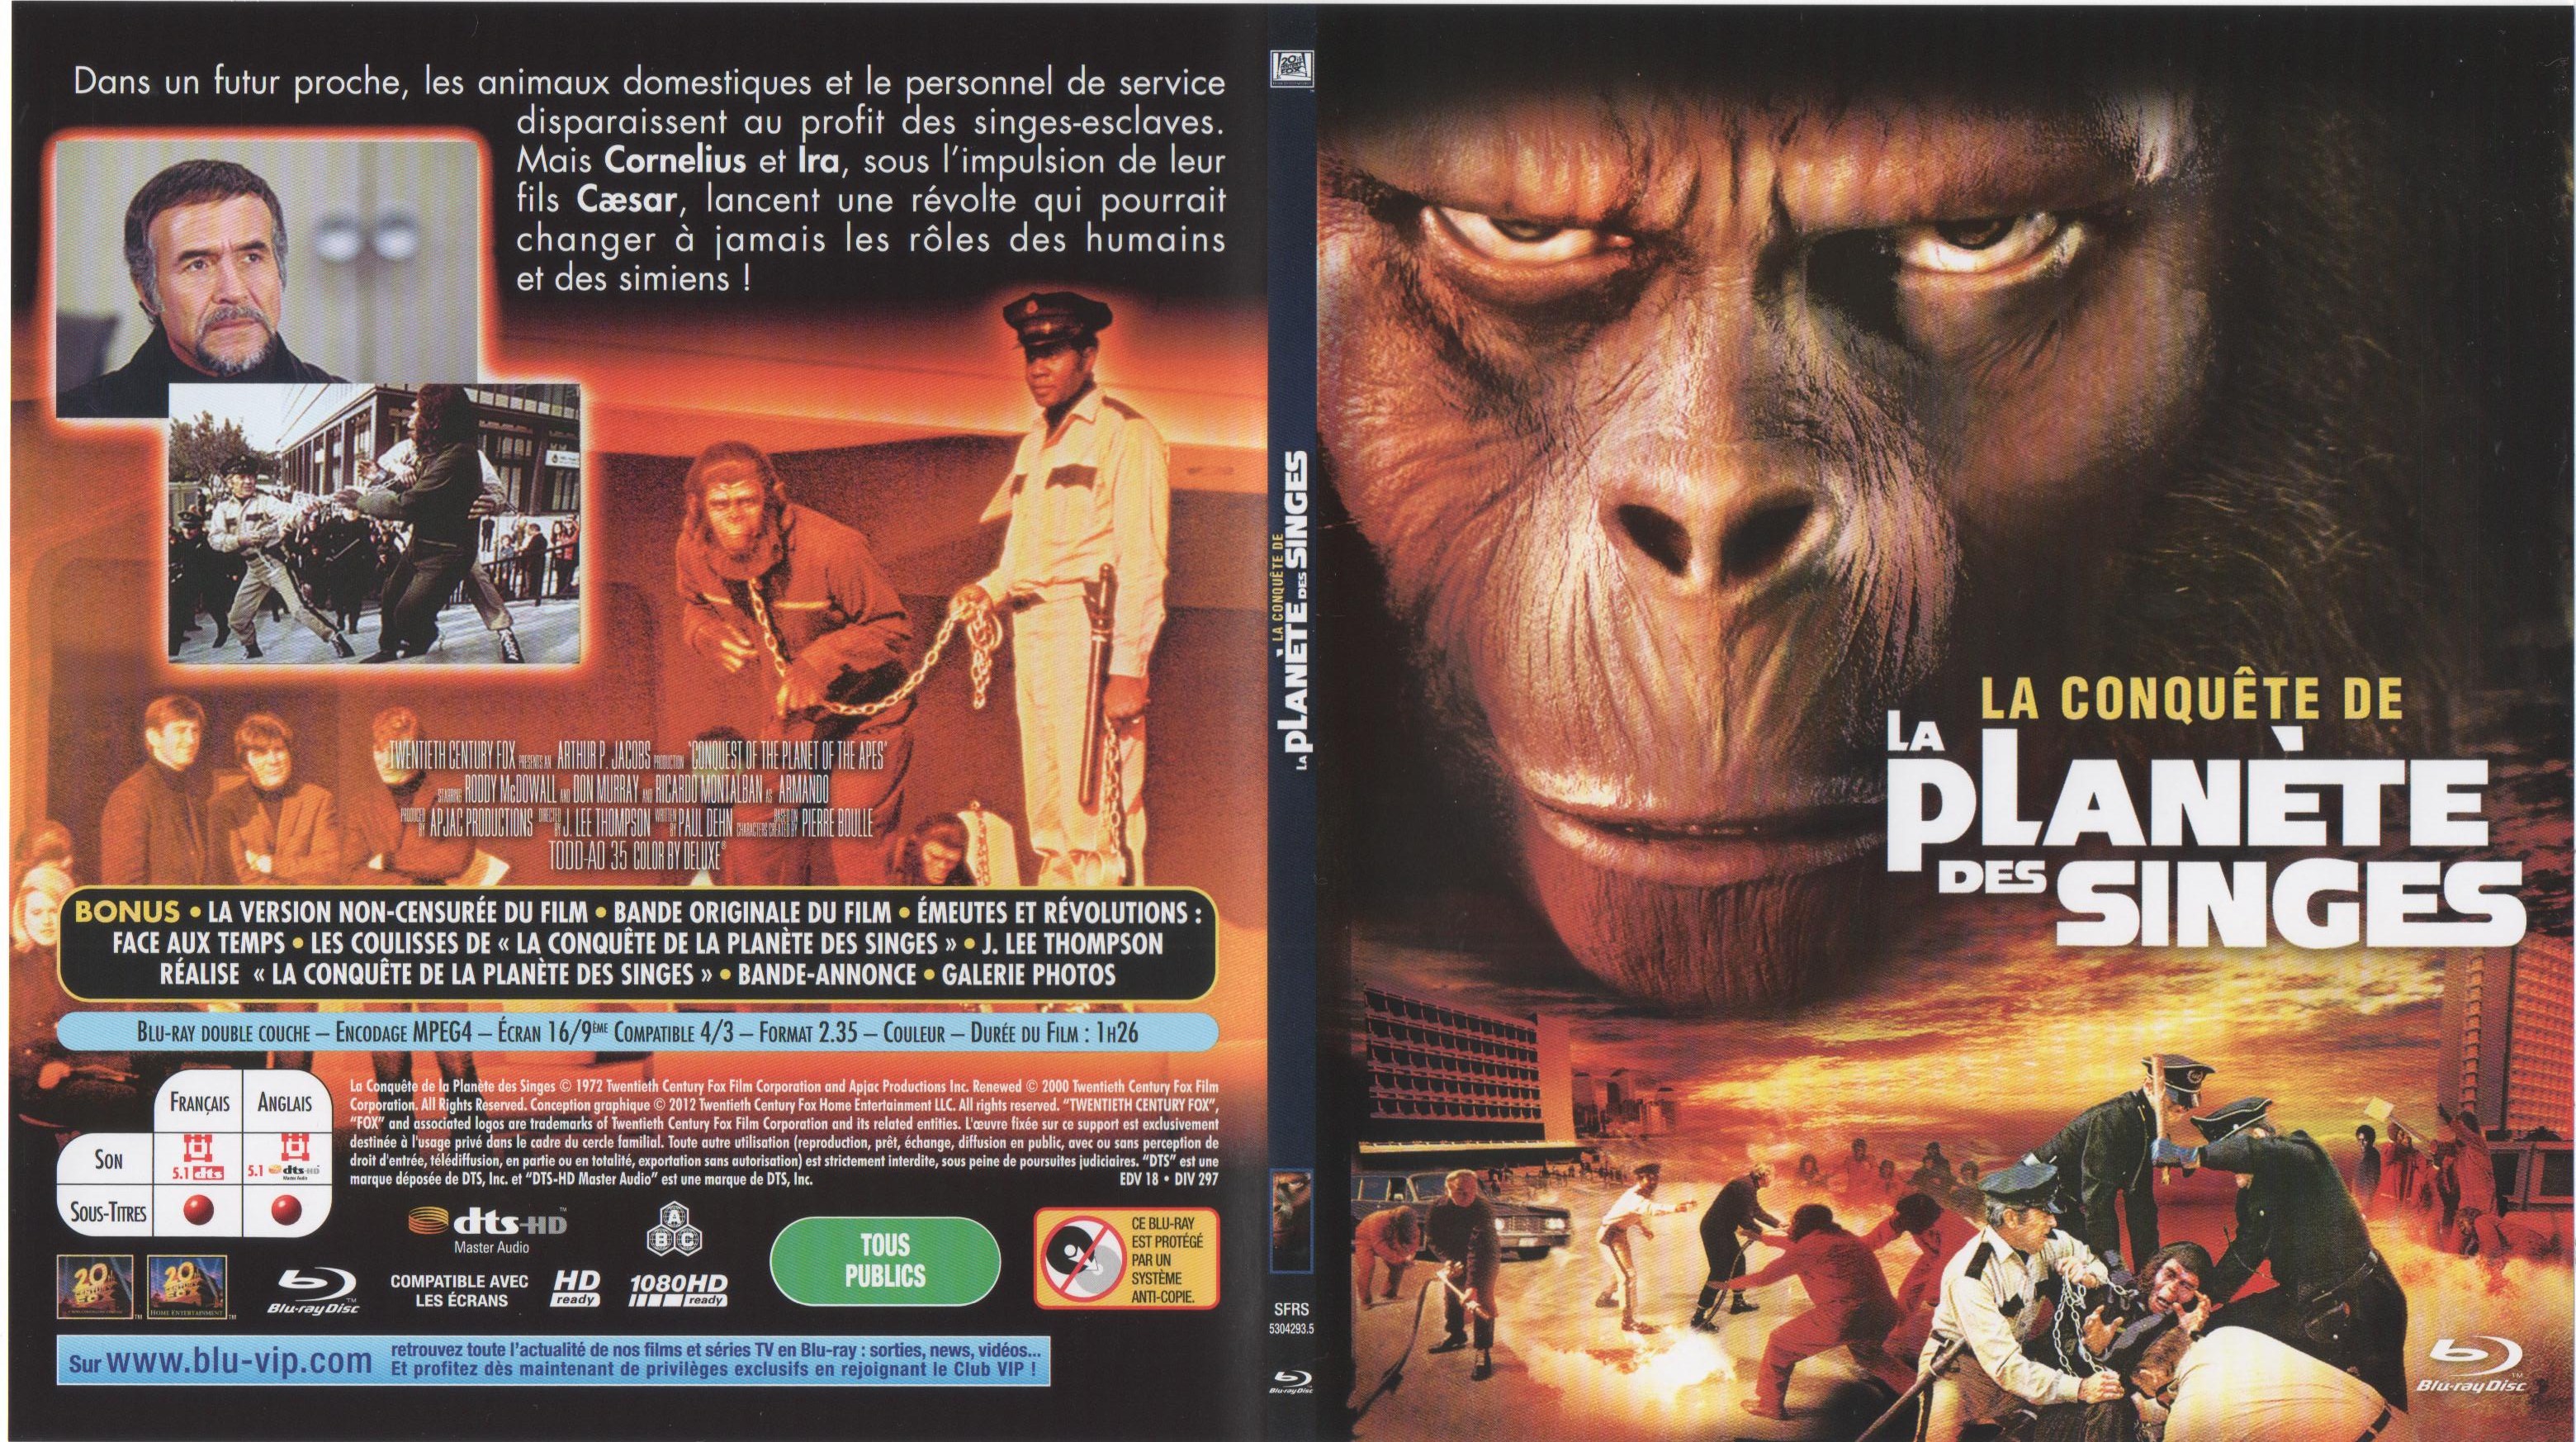 Jaquette DVD La conquete de la planete des singes (BLU-RAY) v2